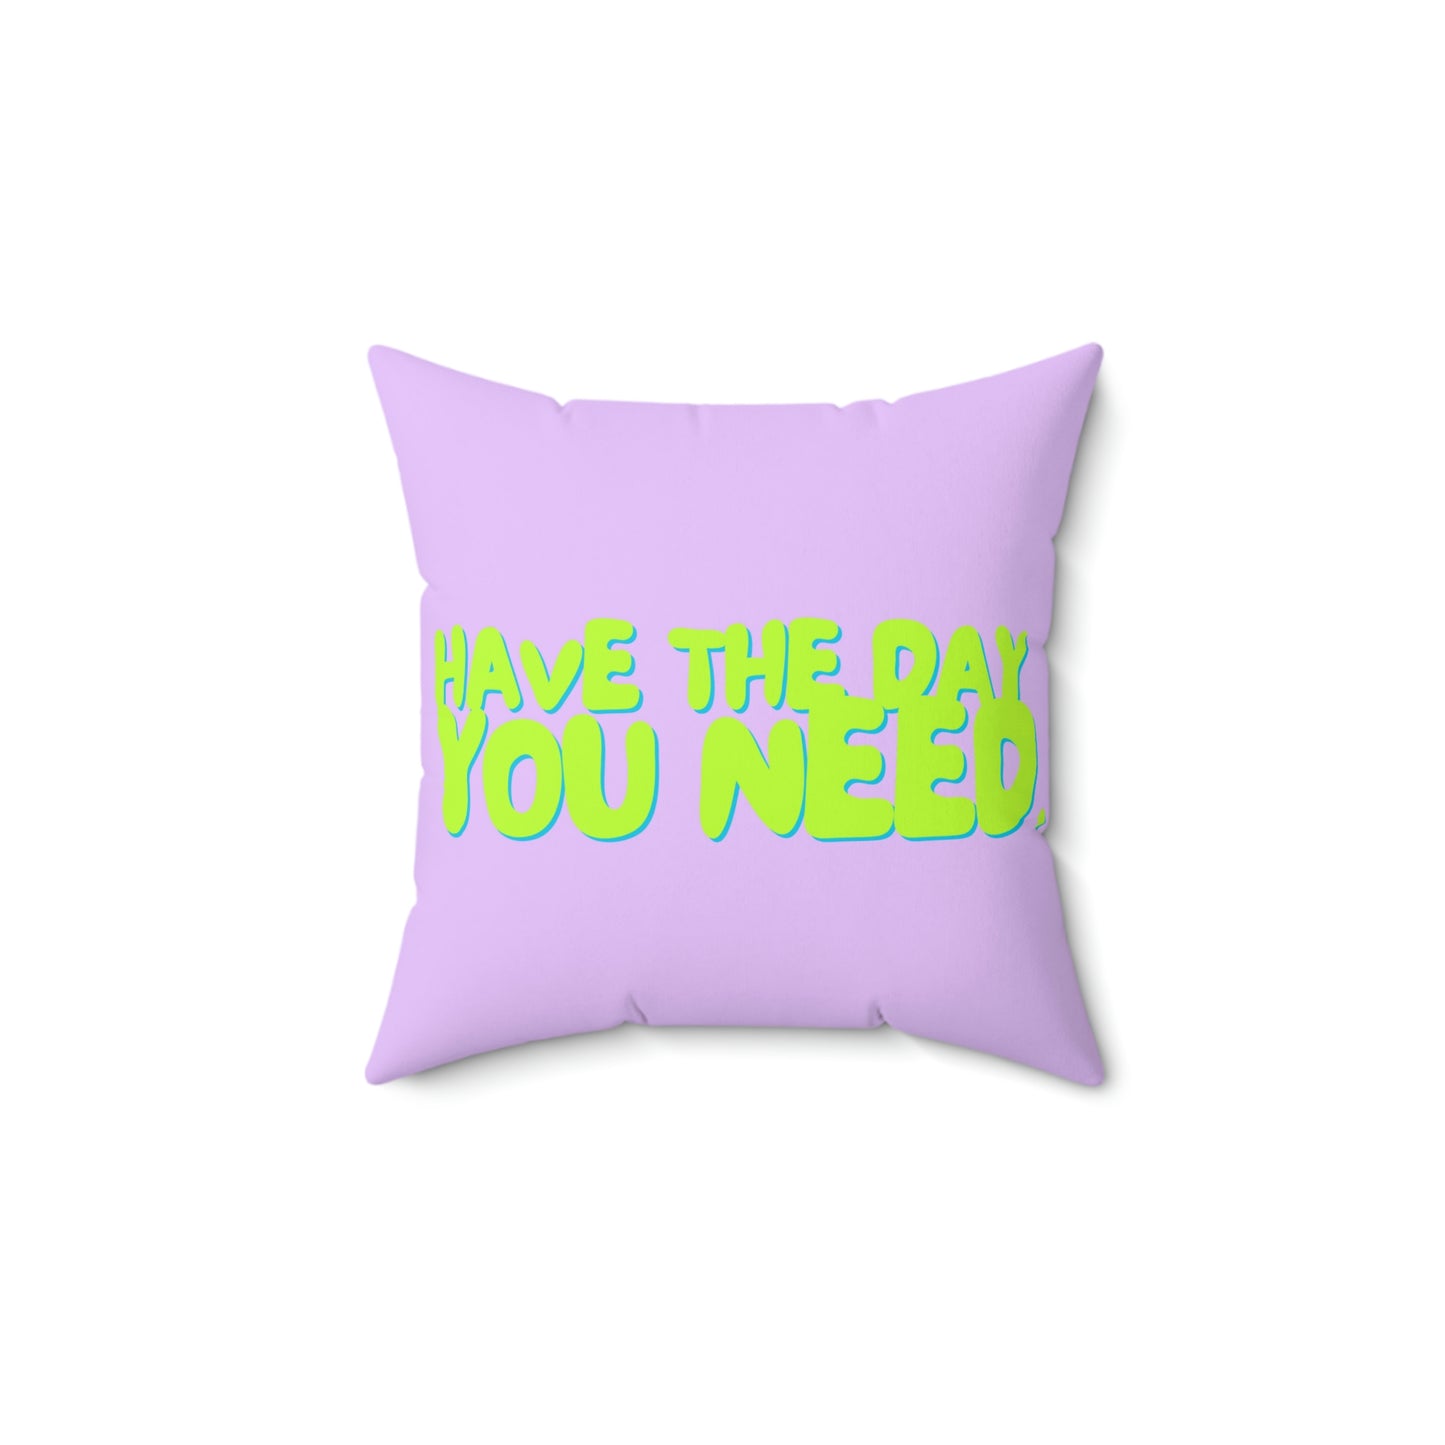 spring '23 logo throw pillow - lavender & sea